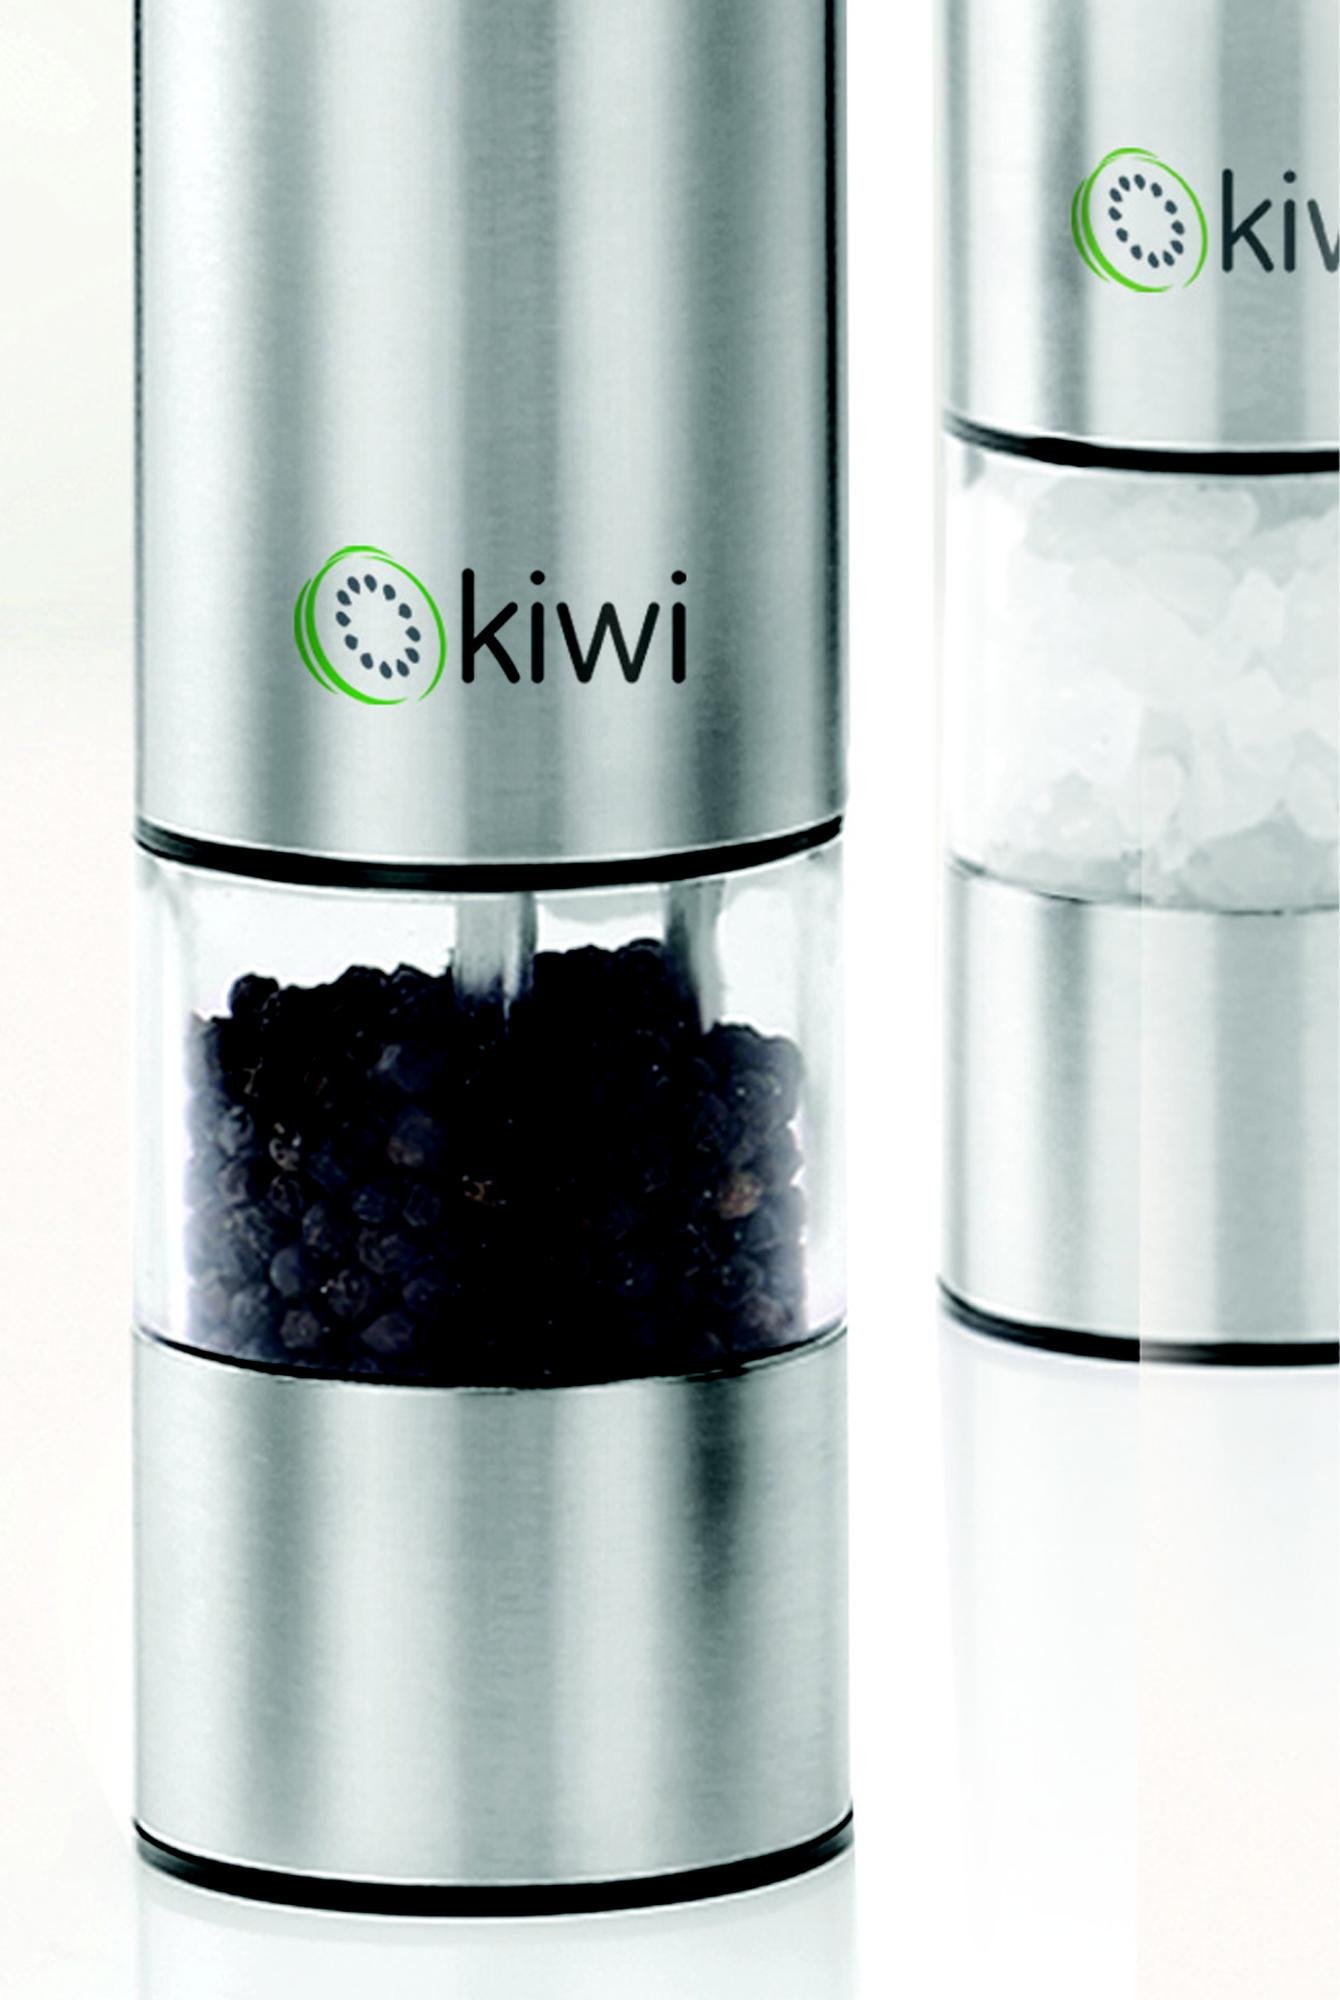  Kiwi Otomatik Tuz ve Karabiber Değirmeni